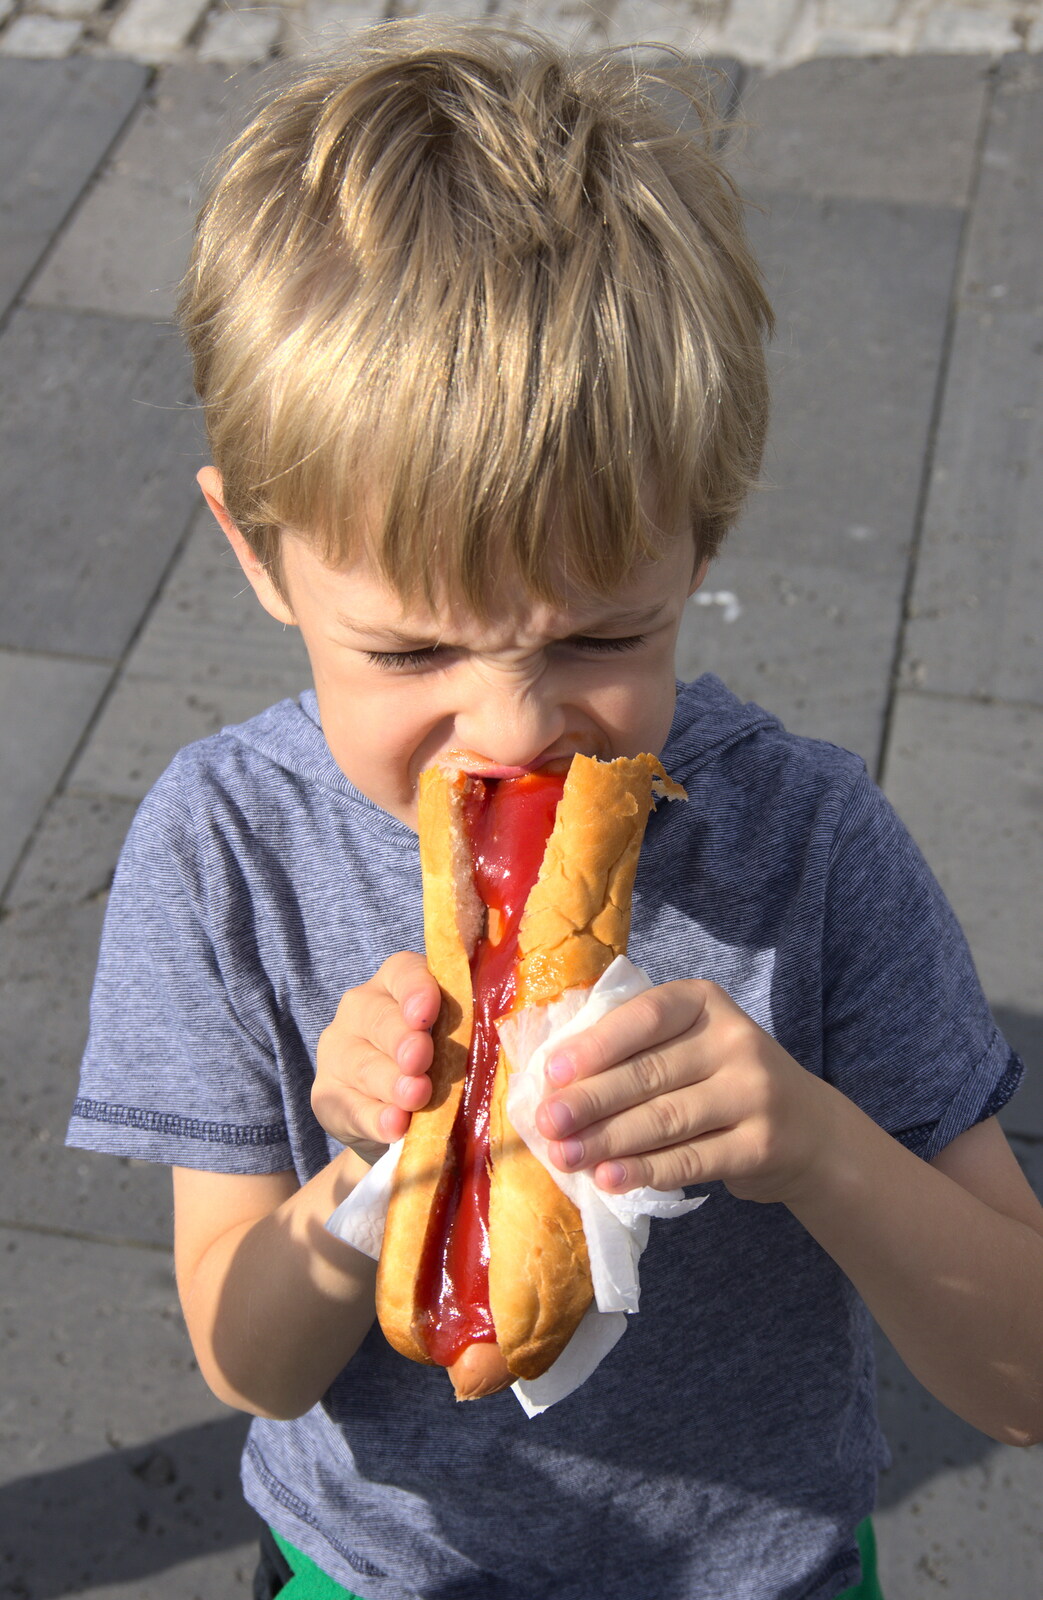 Harry eats a hotdog from L'Aquarium de Barcelona, Port Vell, Catalonia, Spain - 23rd October 2017